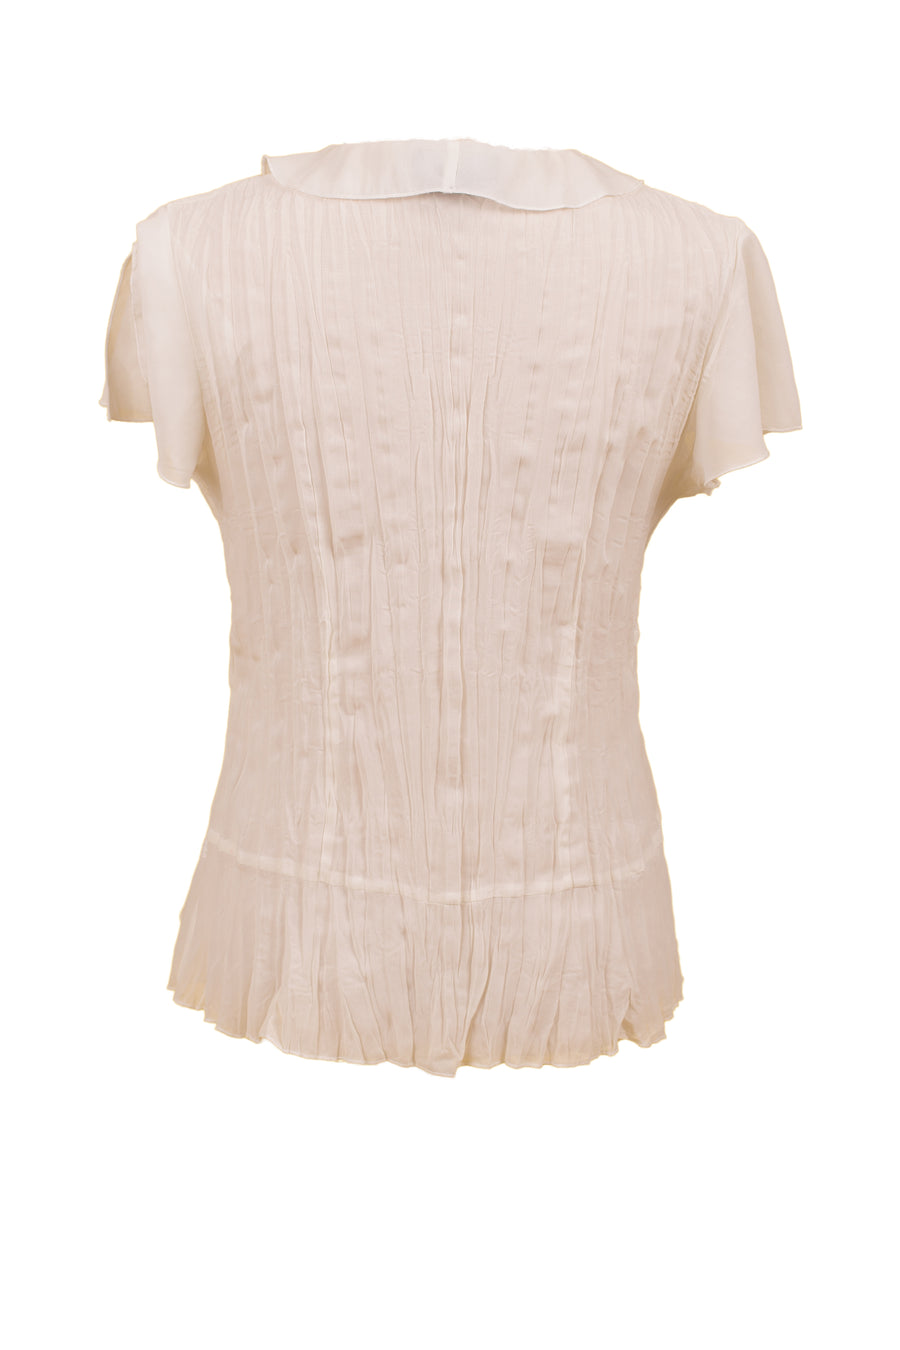 Vintage White Sleeveless Blouse | S